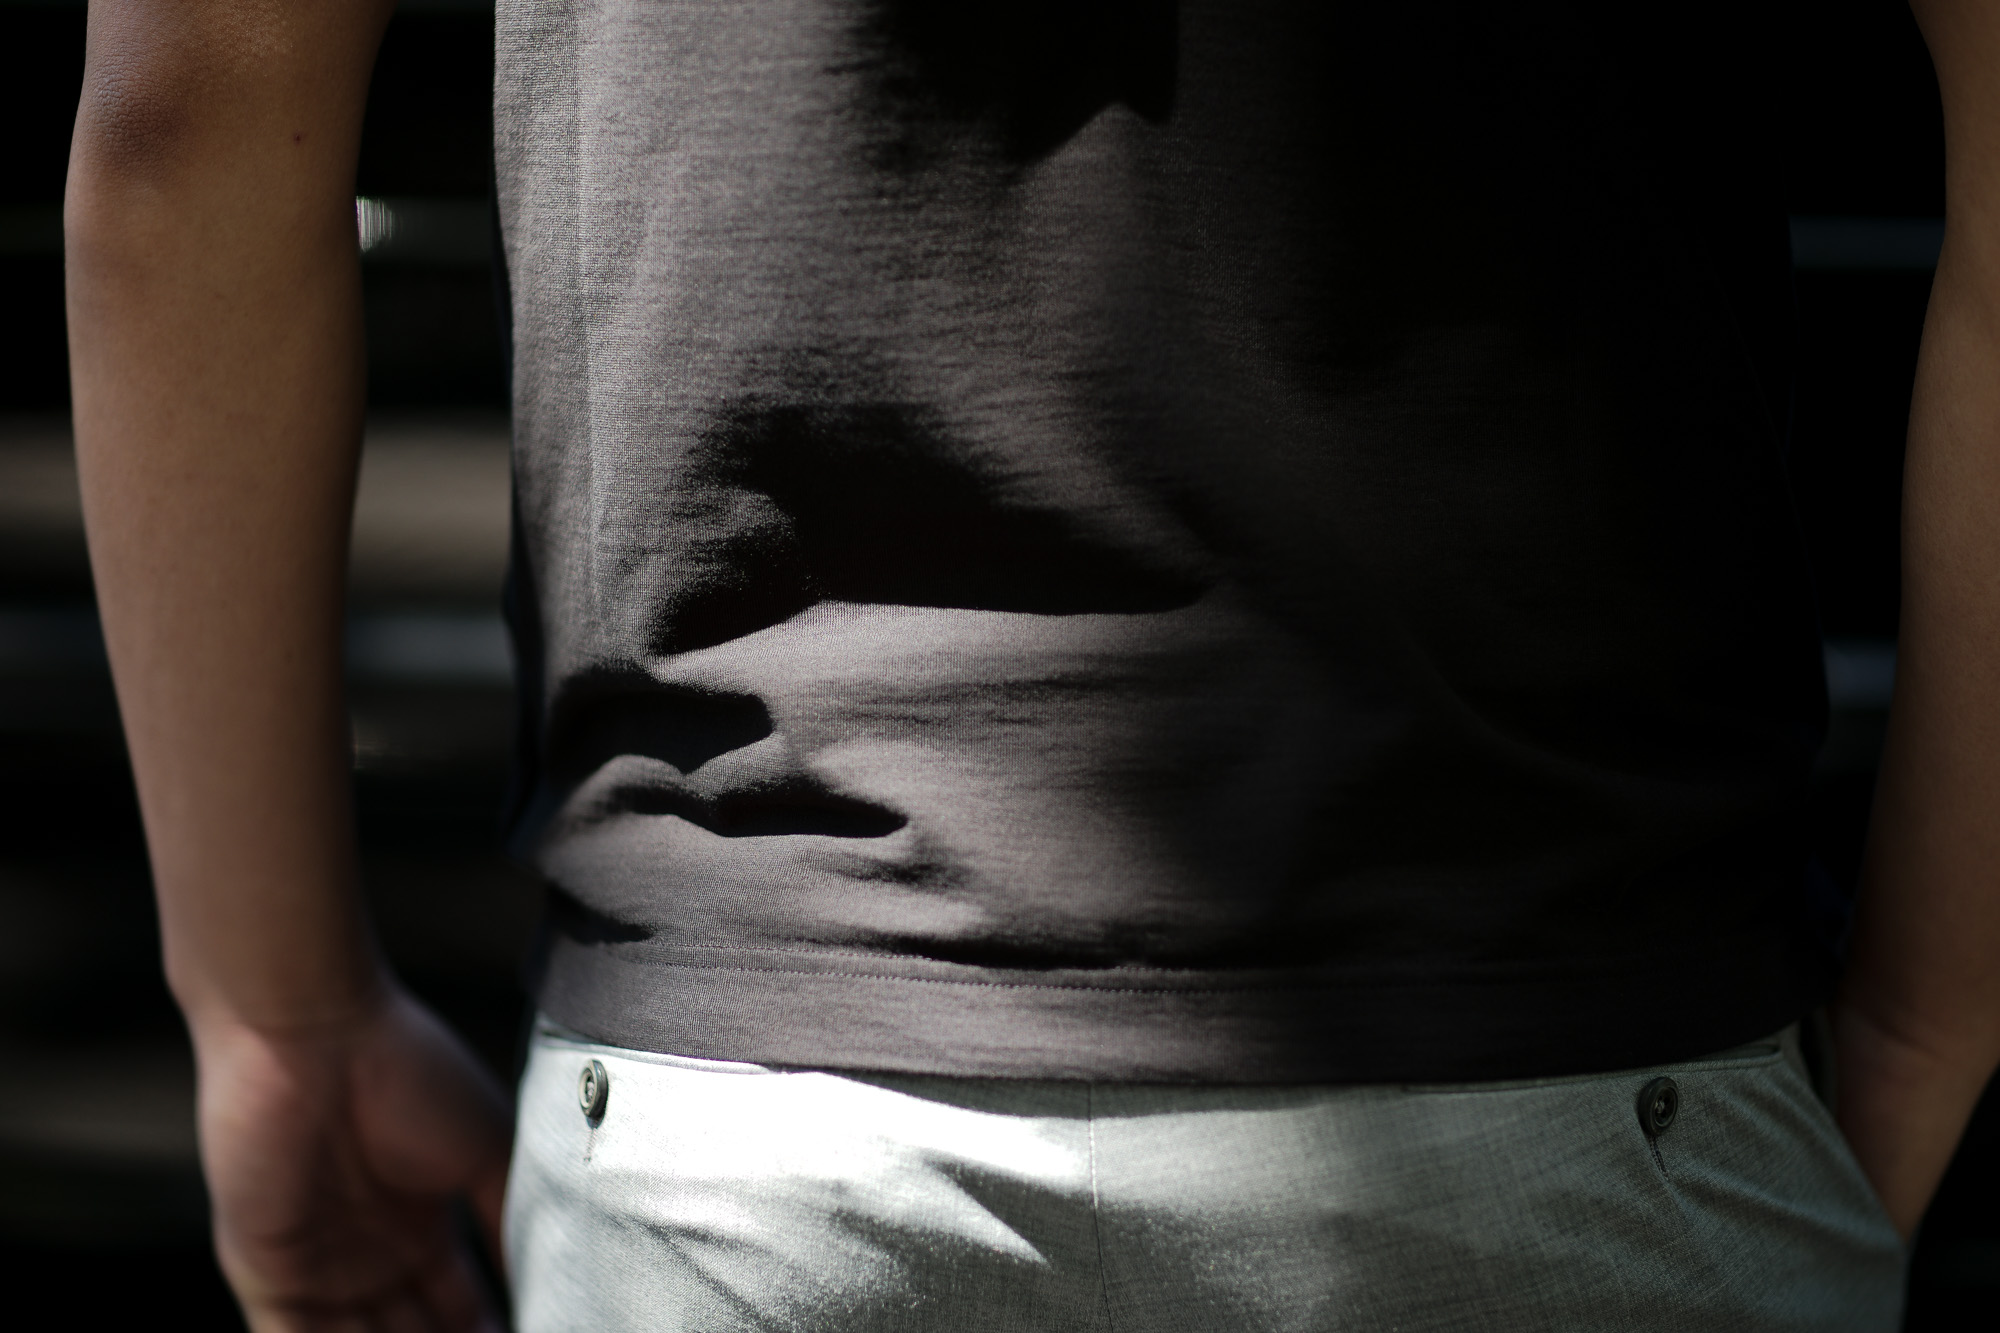 ZANONE (ザノーネ) Crew Neck T-shirt (クルーネックTシャツ) ice cotton アイスコットン Tシャツ BLACK (ブラック・Z0015) MADE IN ITALY(イタリア製) 2019 春夏新作  愛知 名古屋 altoediritto アルトエデリット